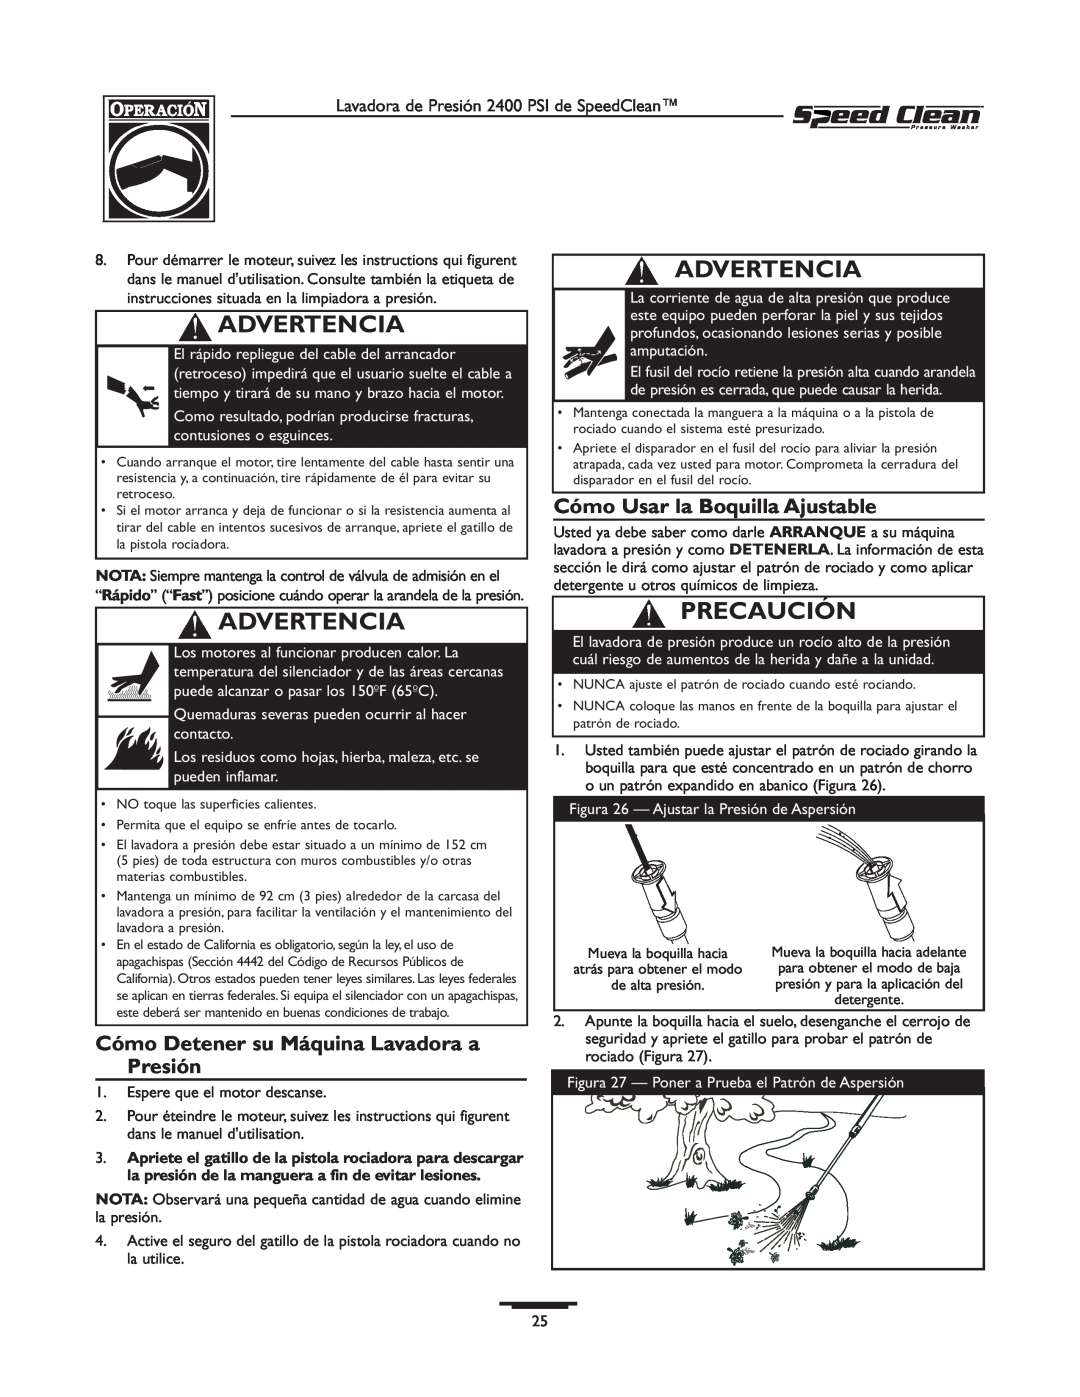 Briggs & Stratton 020227-0 Cómo Detener su Máquina Lavadora a Presión, Cómo Usar la Boquilla Ajustable, Advertencia 